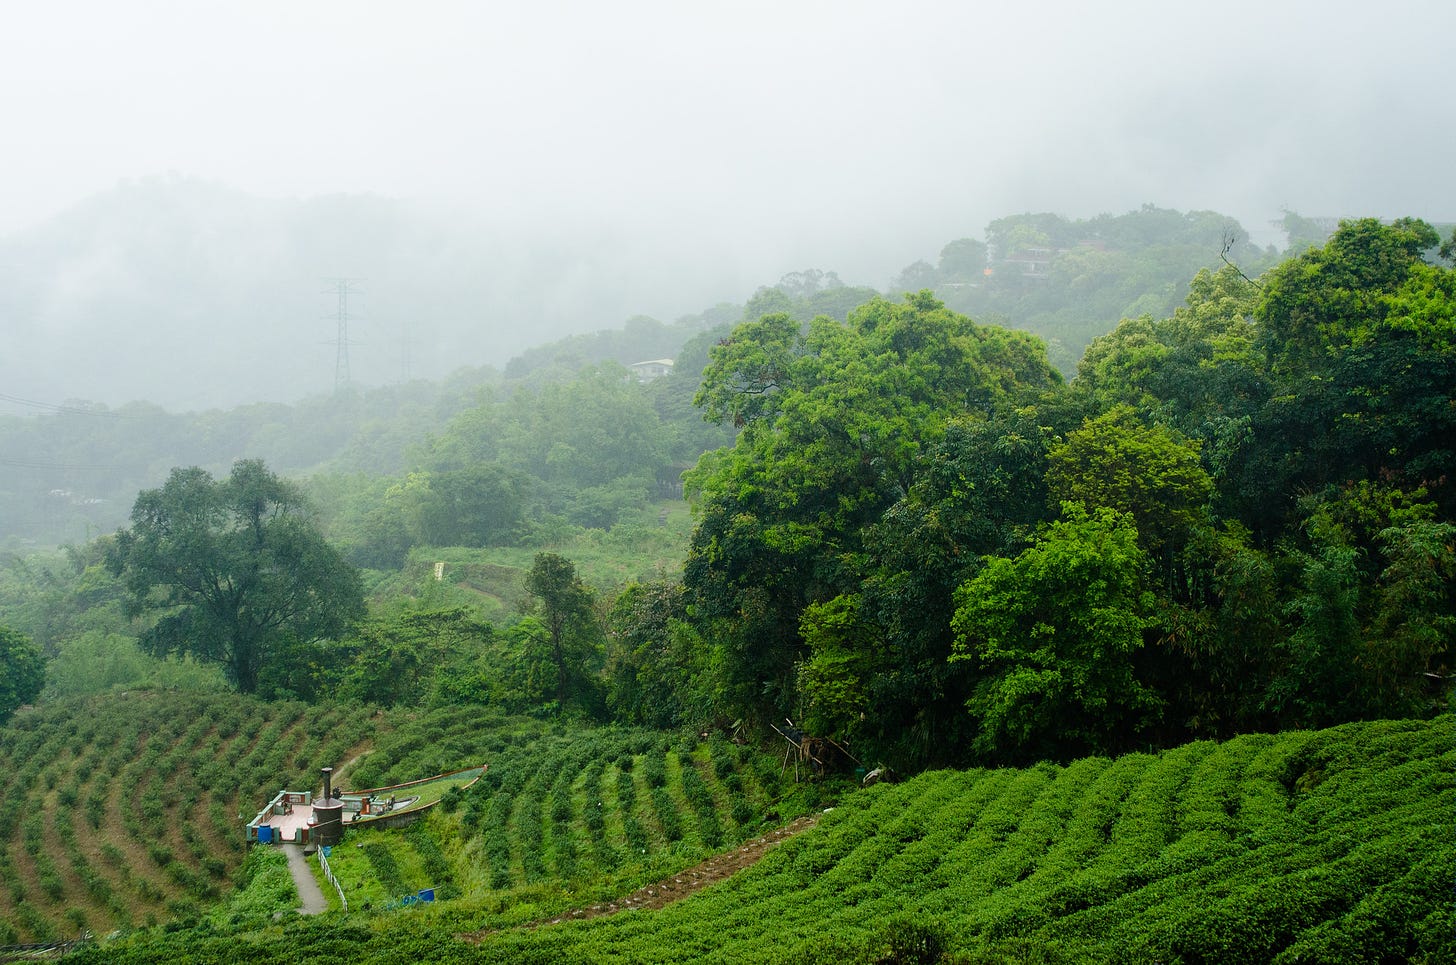 ID: Tea field in Taiwan